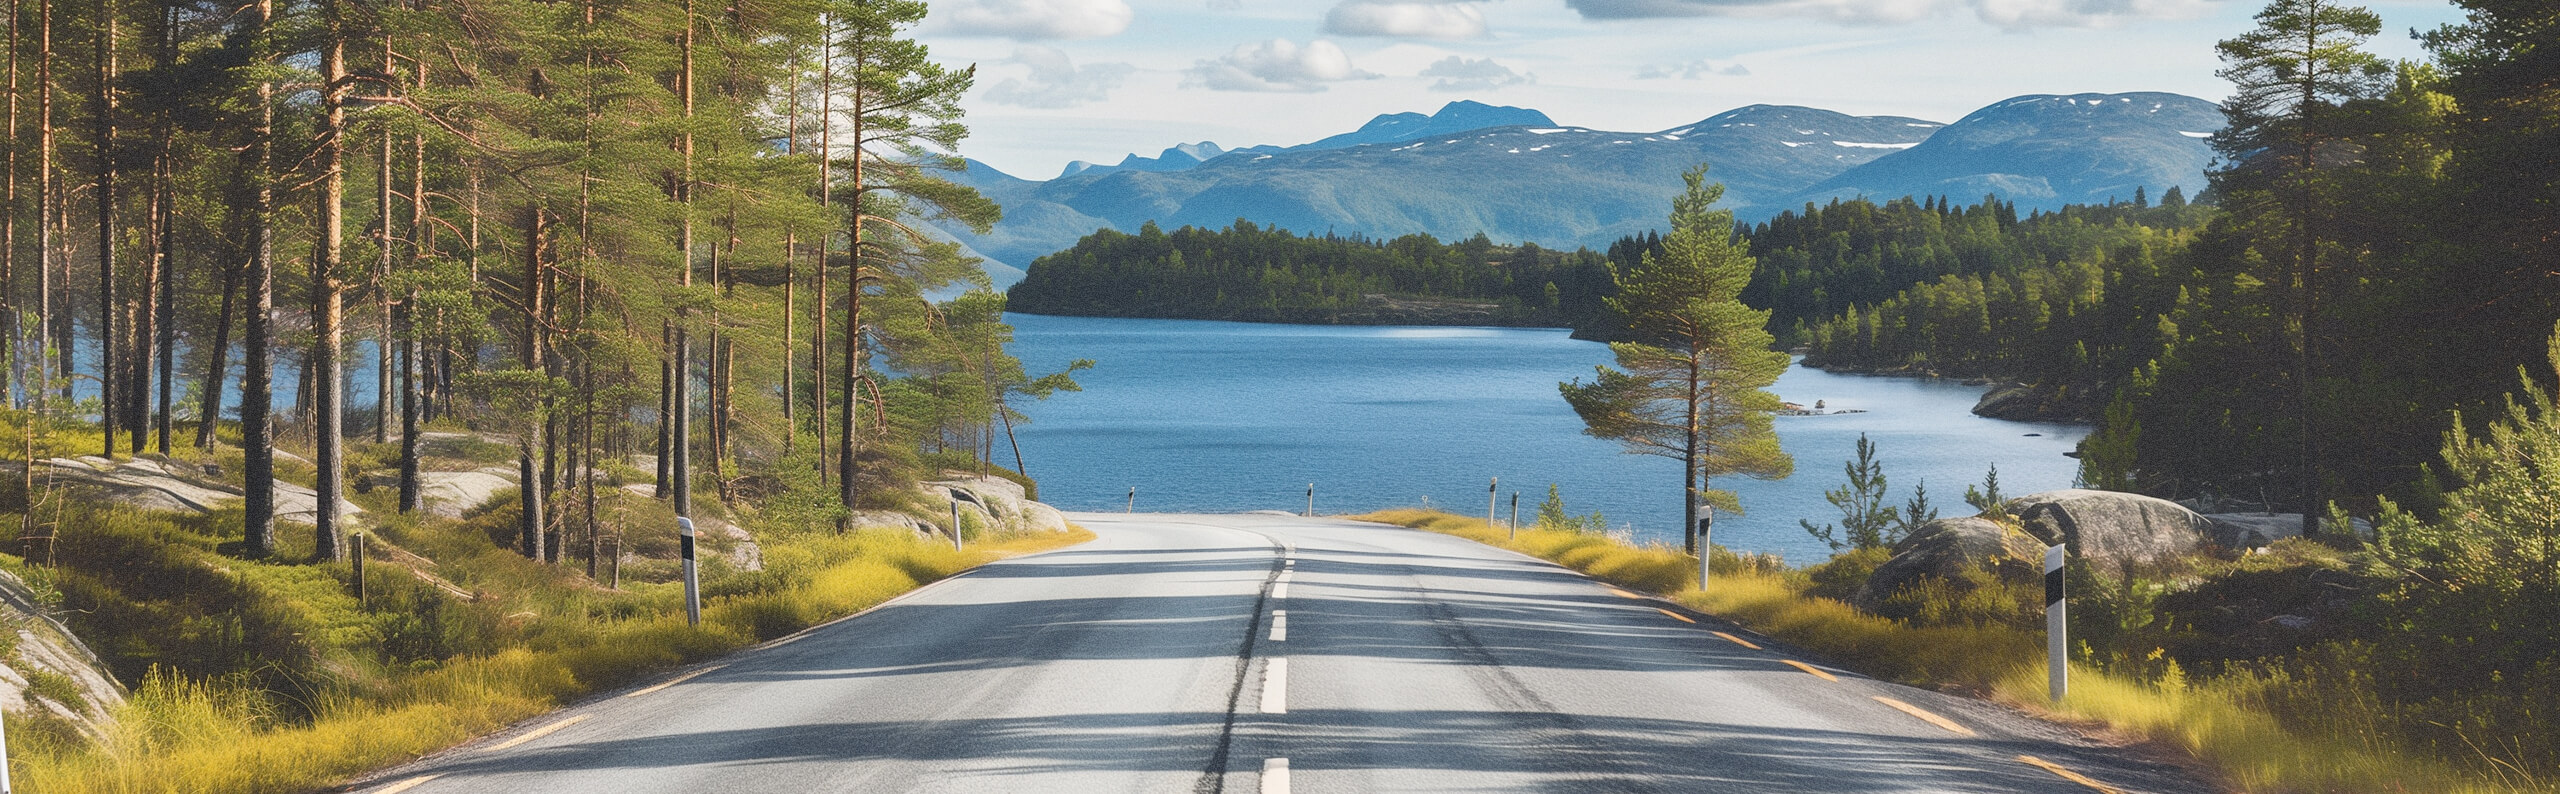 Roadtrip i Sverige! Ett fotografi som blickar ut över sveriges fjäll och en bil väg.